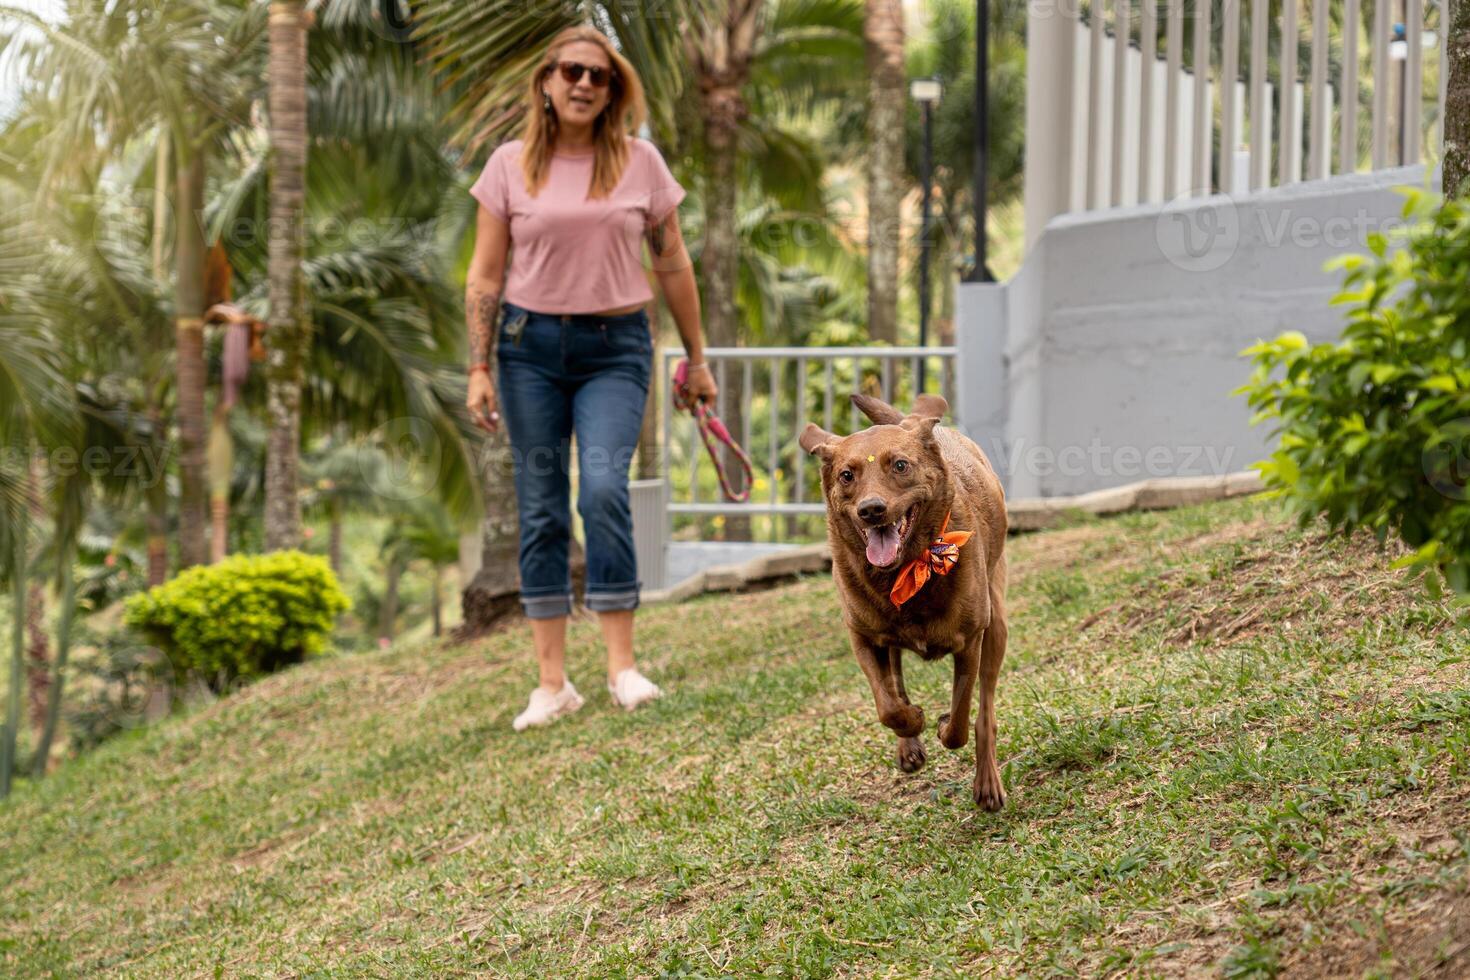 el exuberante perro carreras hacia el cámara en el parque, acompañado por sus dueño. foto